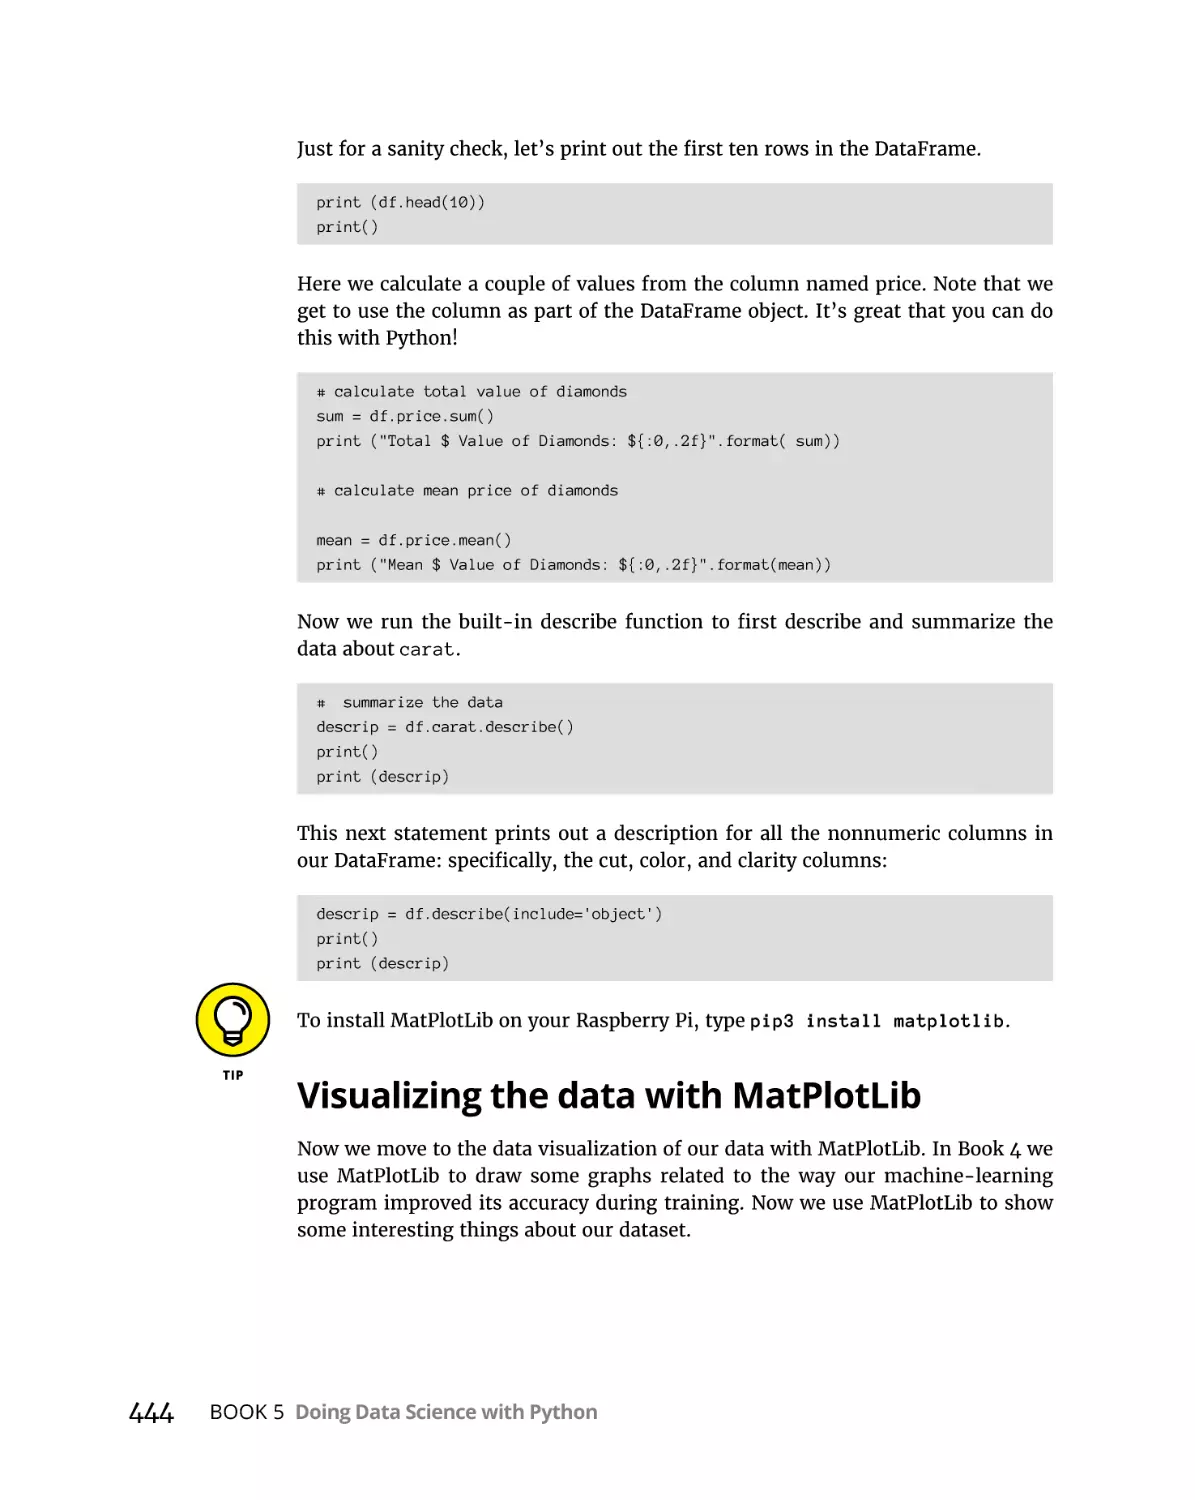 Visualizing the data with MatPlotLib